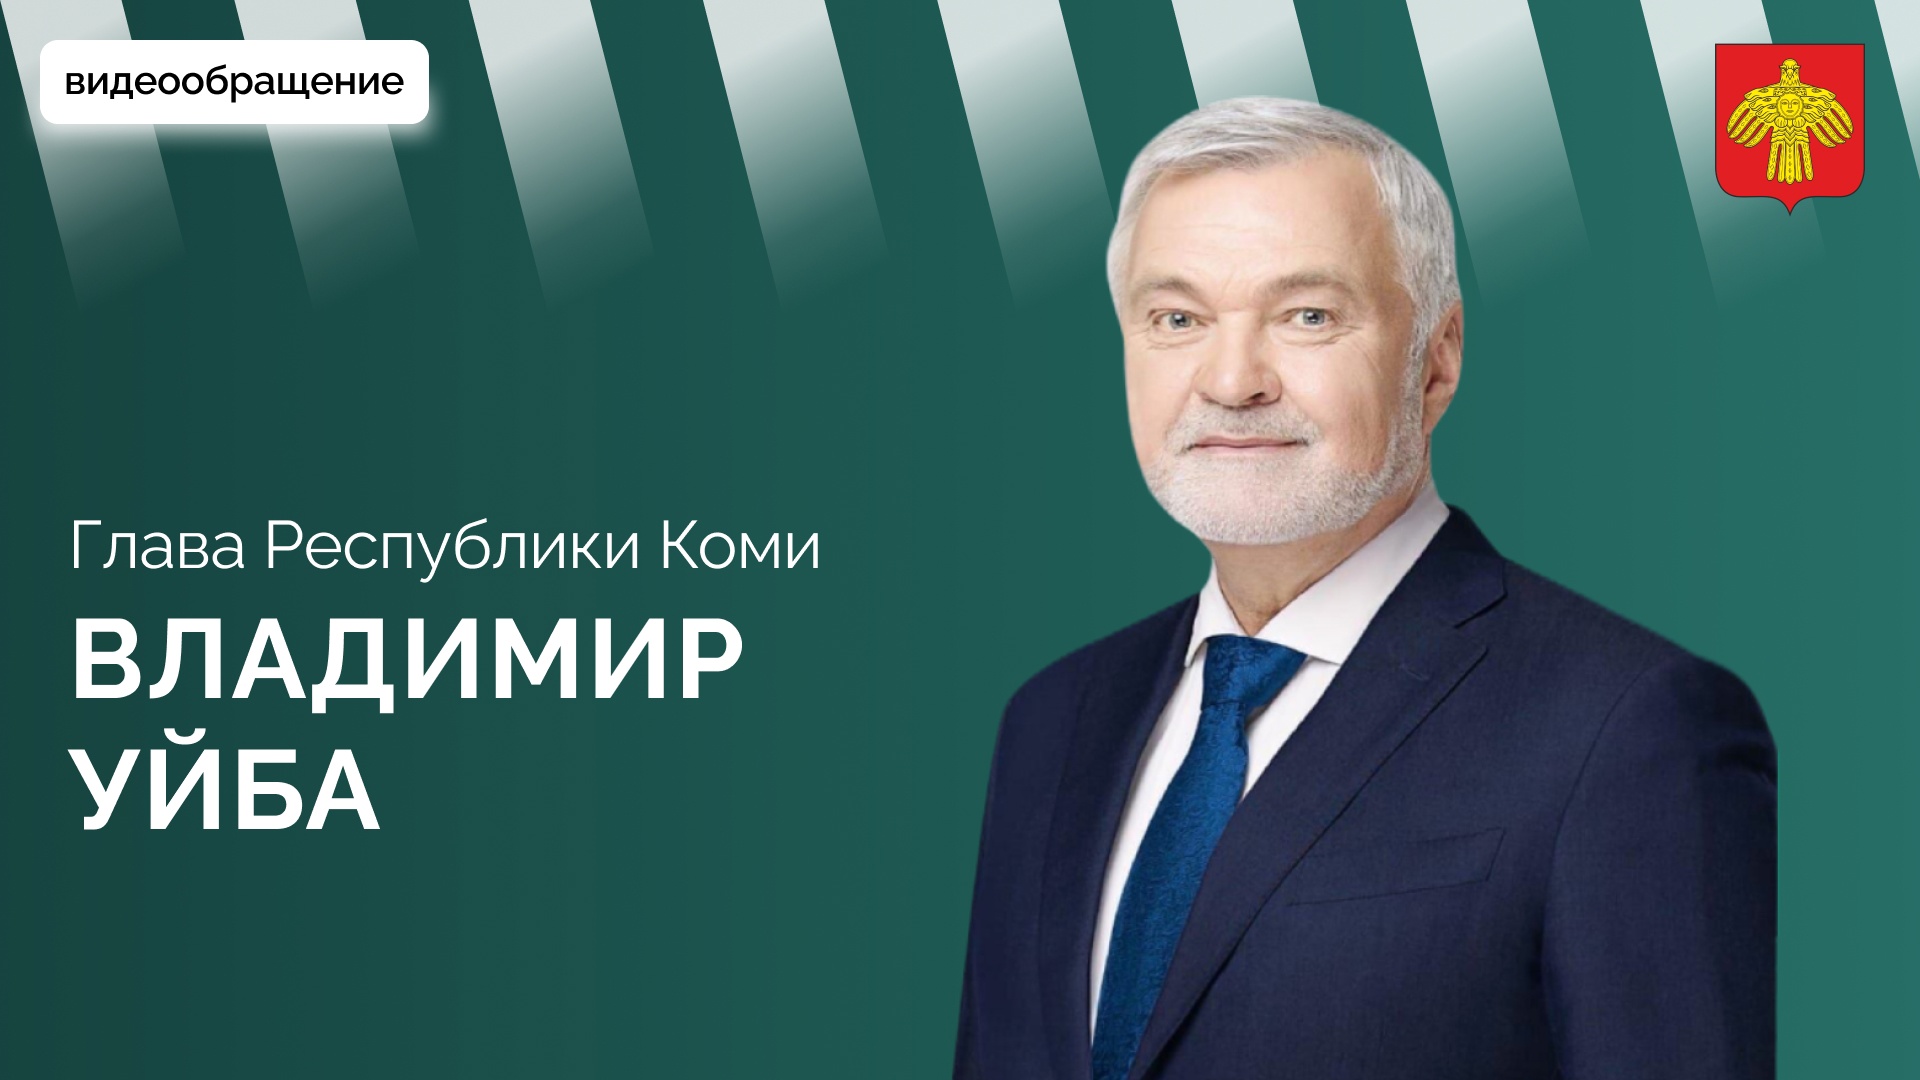 Владимир Уйба об инвестиционном послании к представителям бизнес-сообщества Республики Коми